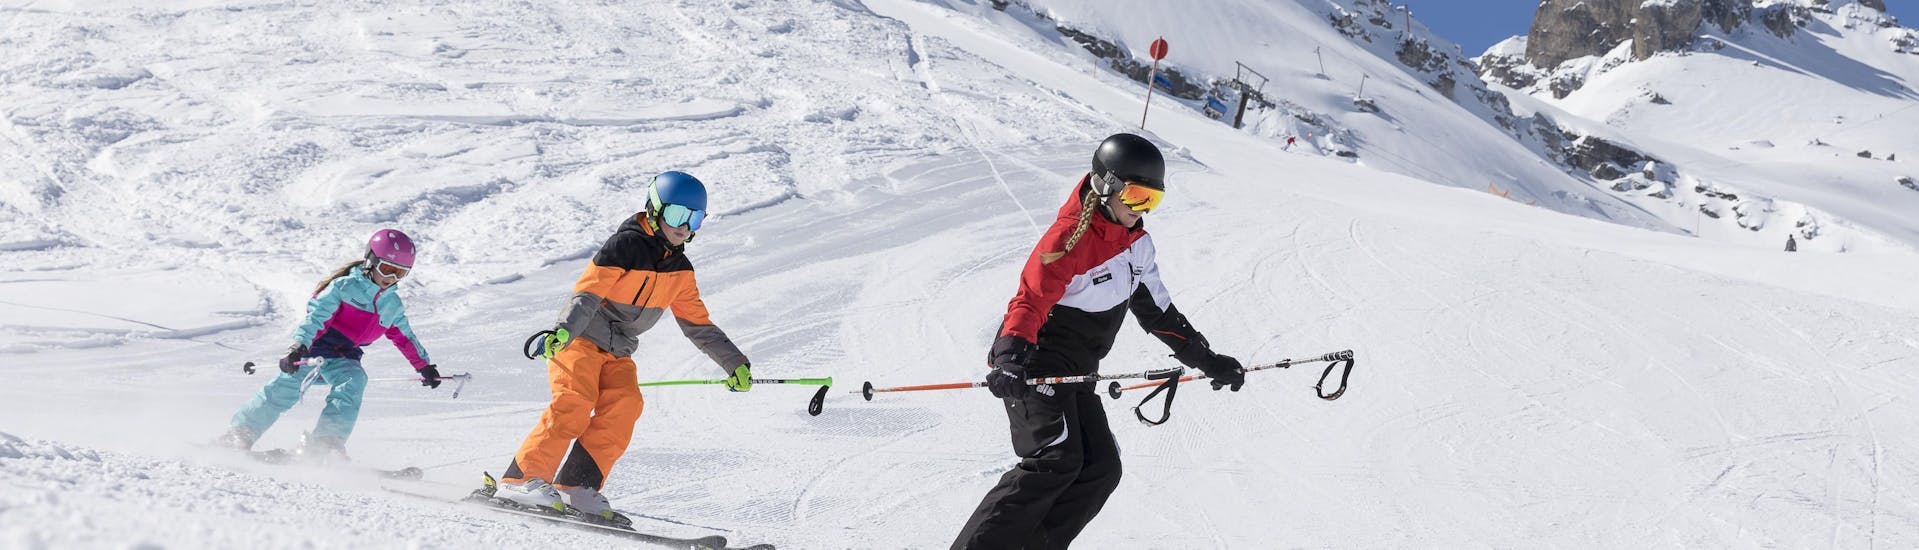 Un groupe de skieurs pendant leurs Premier Cours de ski Enfants (dès 4 ans) avec Skischule Stubai Tirol.